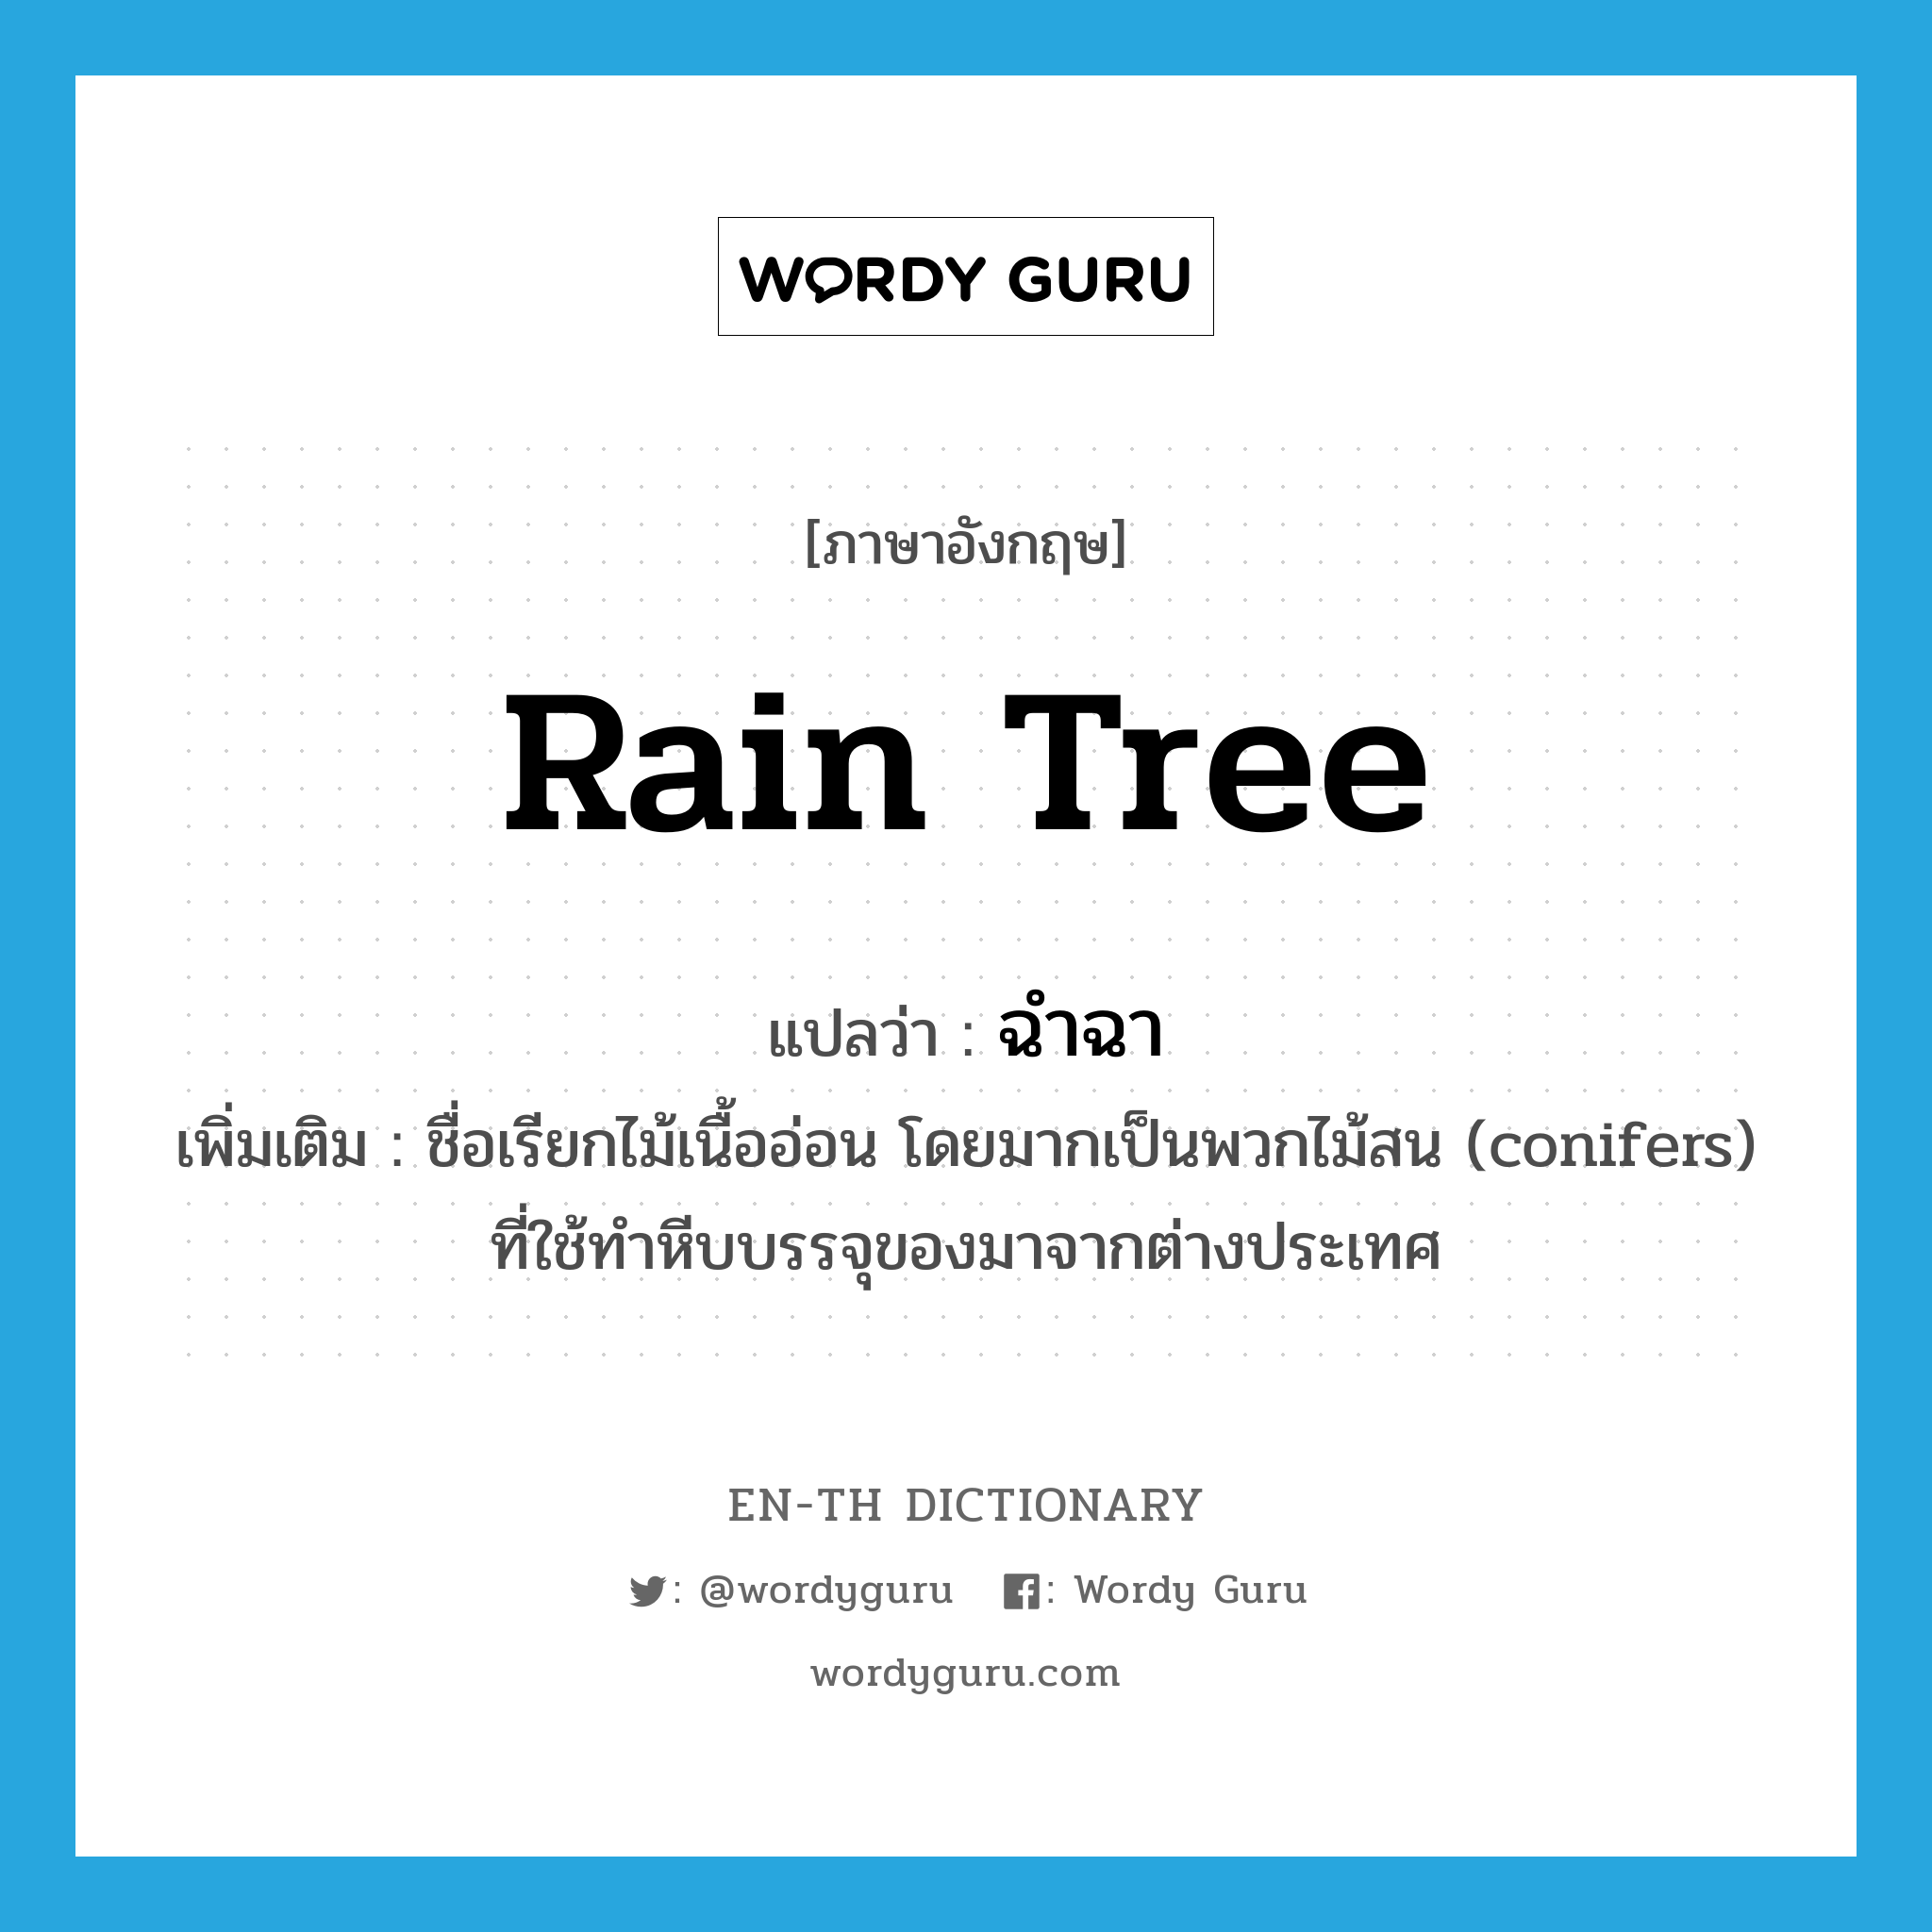 rain tree แปลว่า?, คำศัพท์ภาษาอังกฤษ rain tree แปลว่า ฉำฉา ประเภท N เพิ่มเติม ชื่อเรียกไม้เนื้ออ่อน โดยมากเป็นพวกไม้สน (conifers) ที่ใช้ทำหีบบรรจุของมาจากต่างประเทศ หมวด N